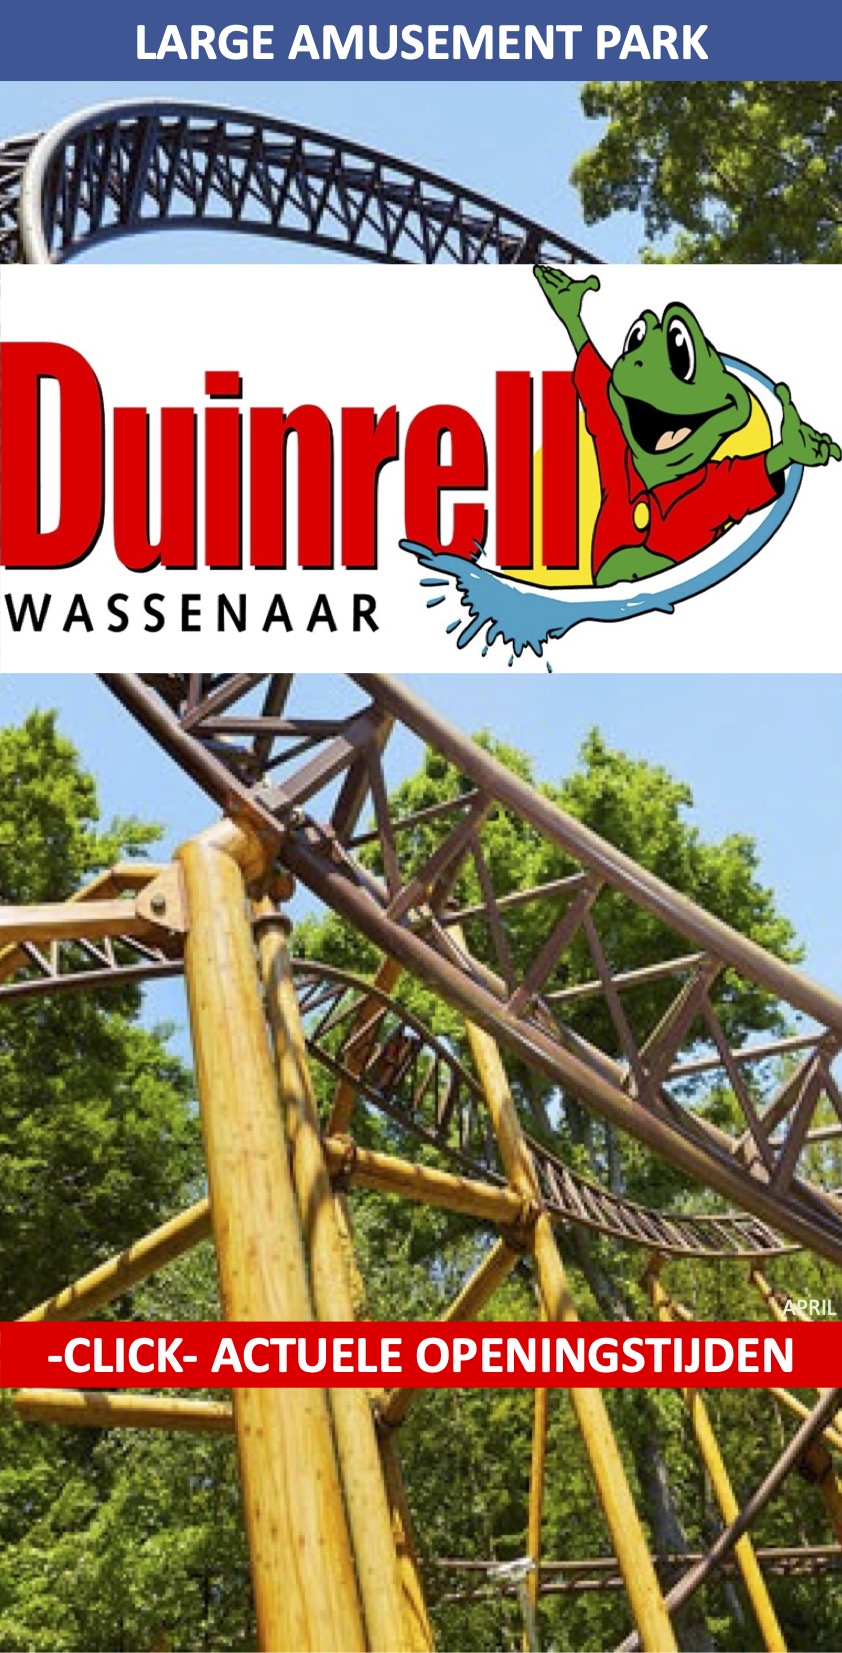 Duinrell Attractiepark Wassenaar april